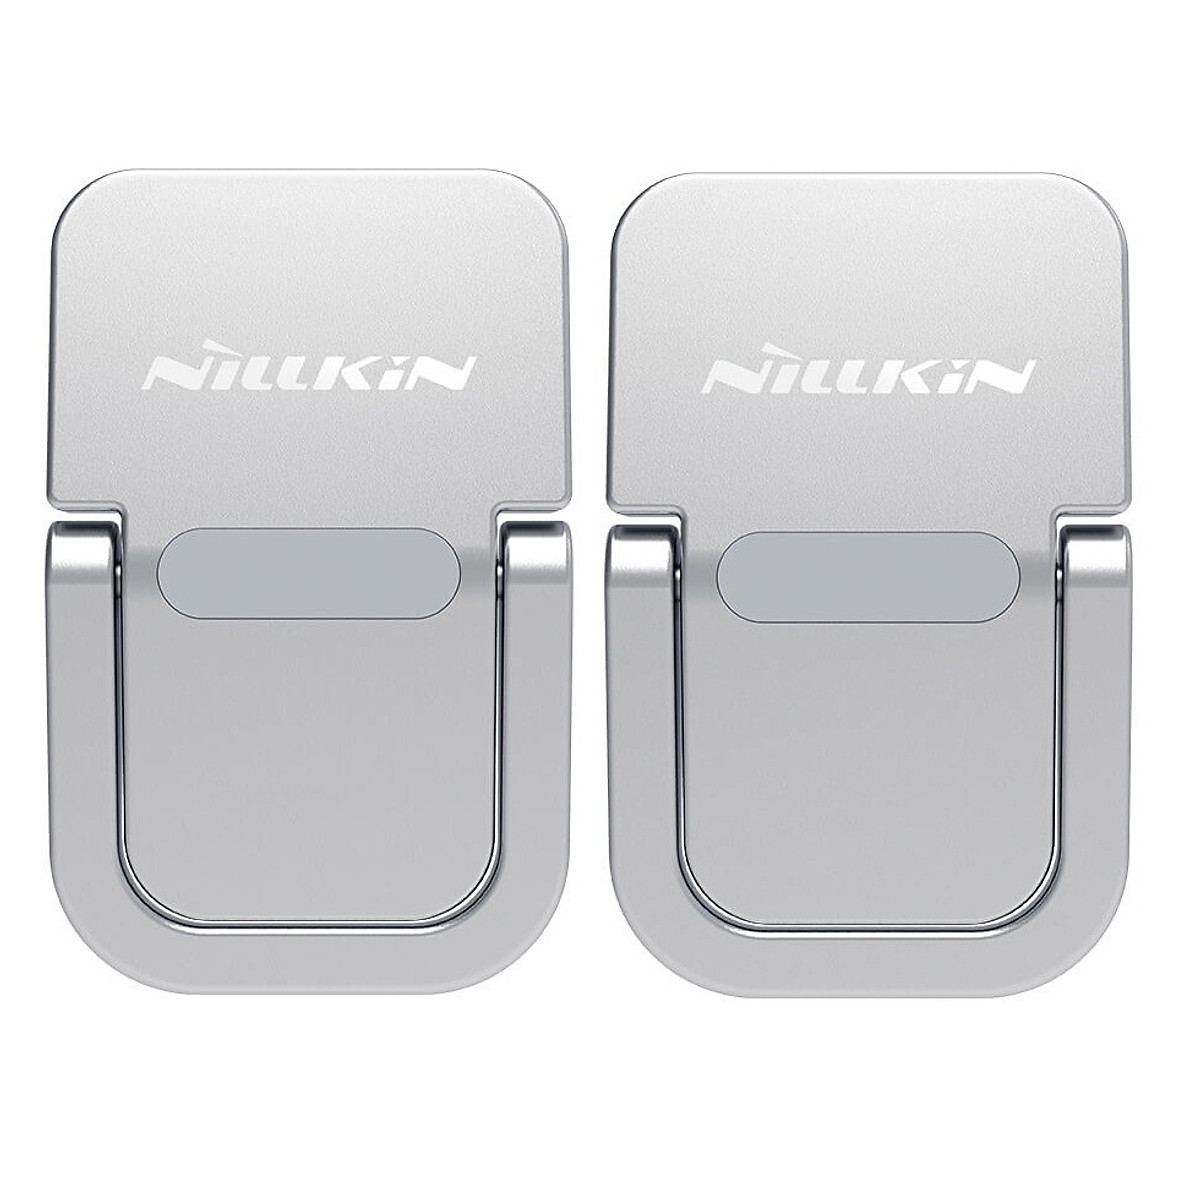 Bộ giá đỡ tản nhiệt mini cho Macbook / laptop siêu nhỏ gọn hiệu Nillkin Laptop Bolster portable stand